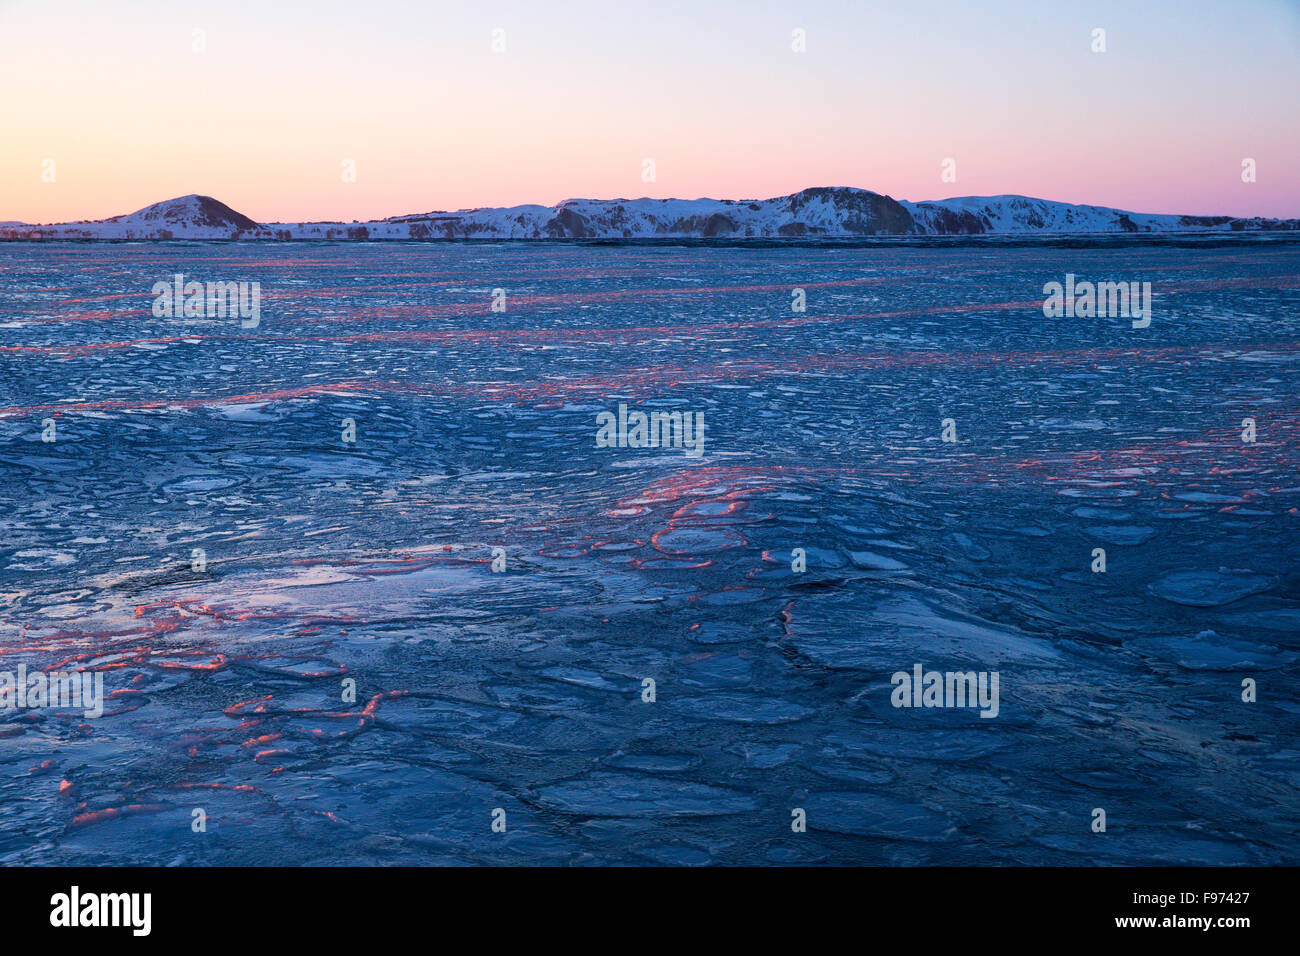 Pancake ice al tramonto, Golfo di San Lorenzo, vicino Îles de la Madeleine (Maddalena isole), Quebec, Canada. Foto Stock